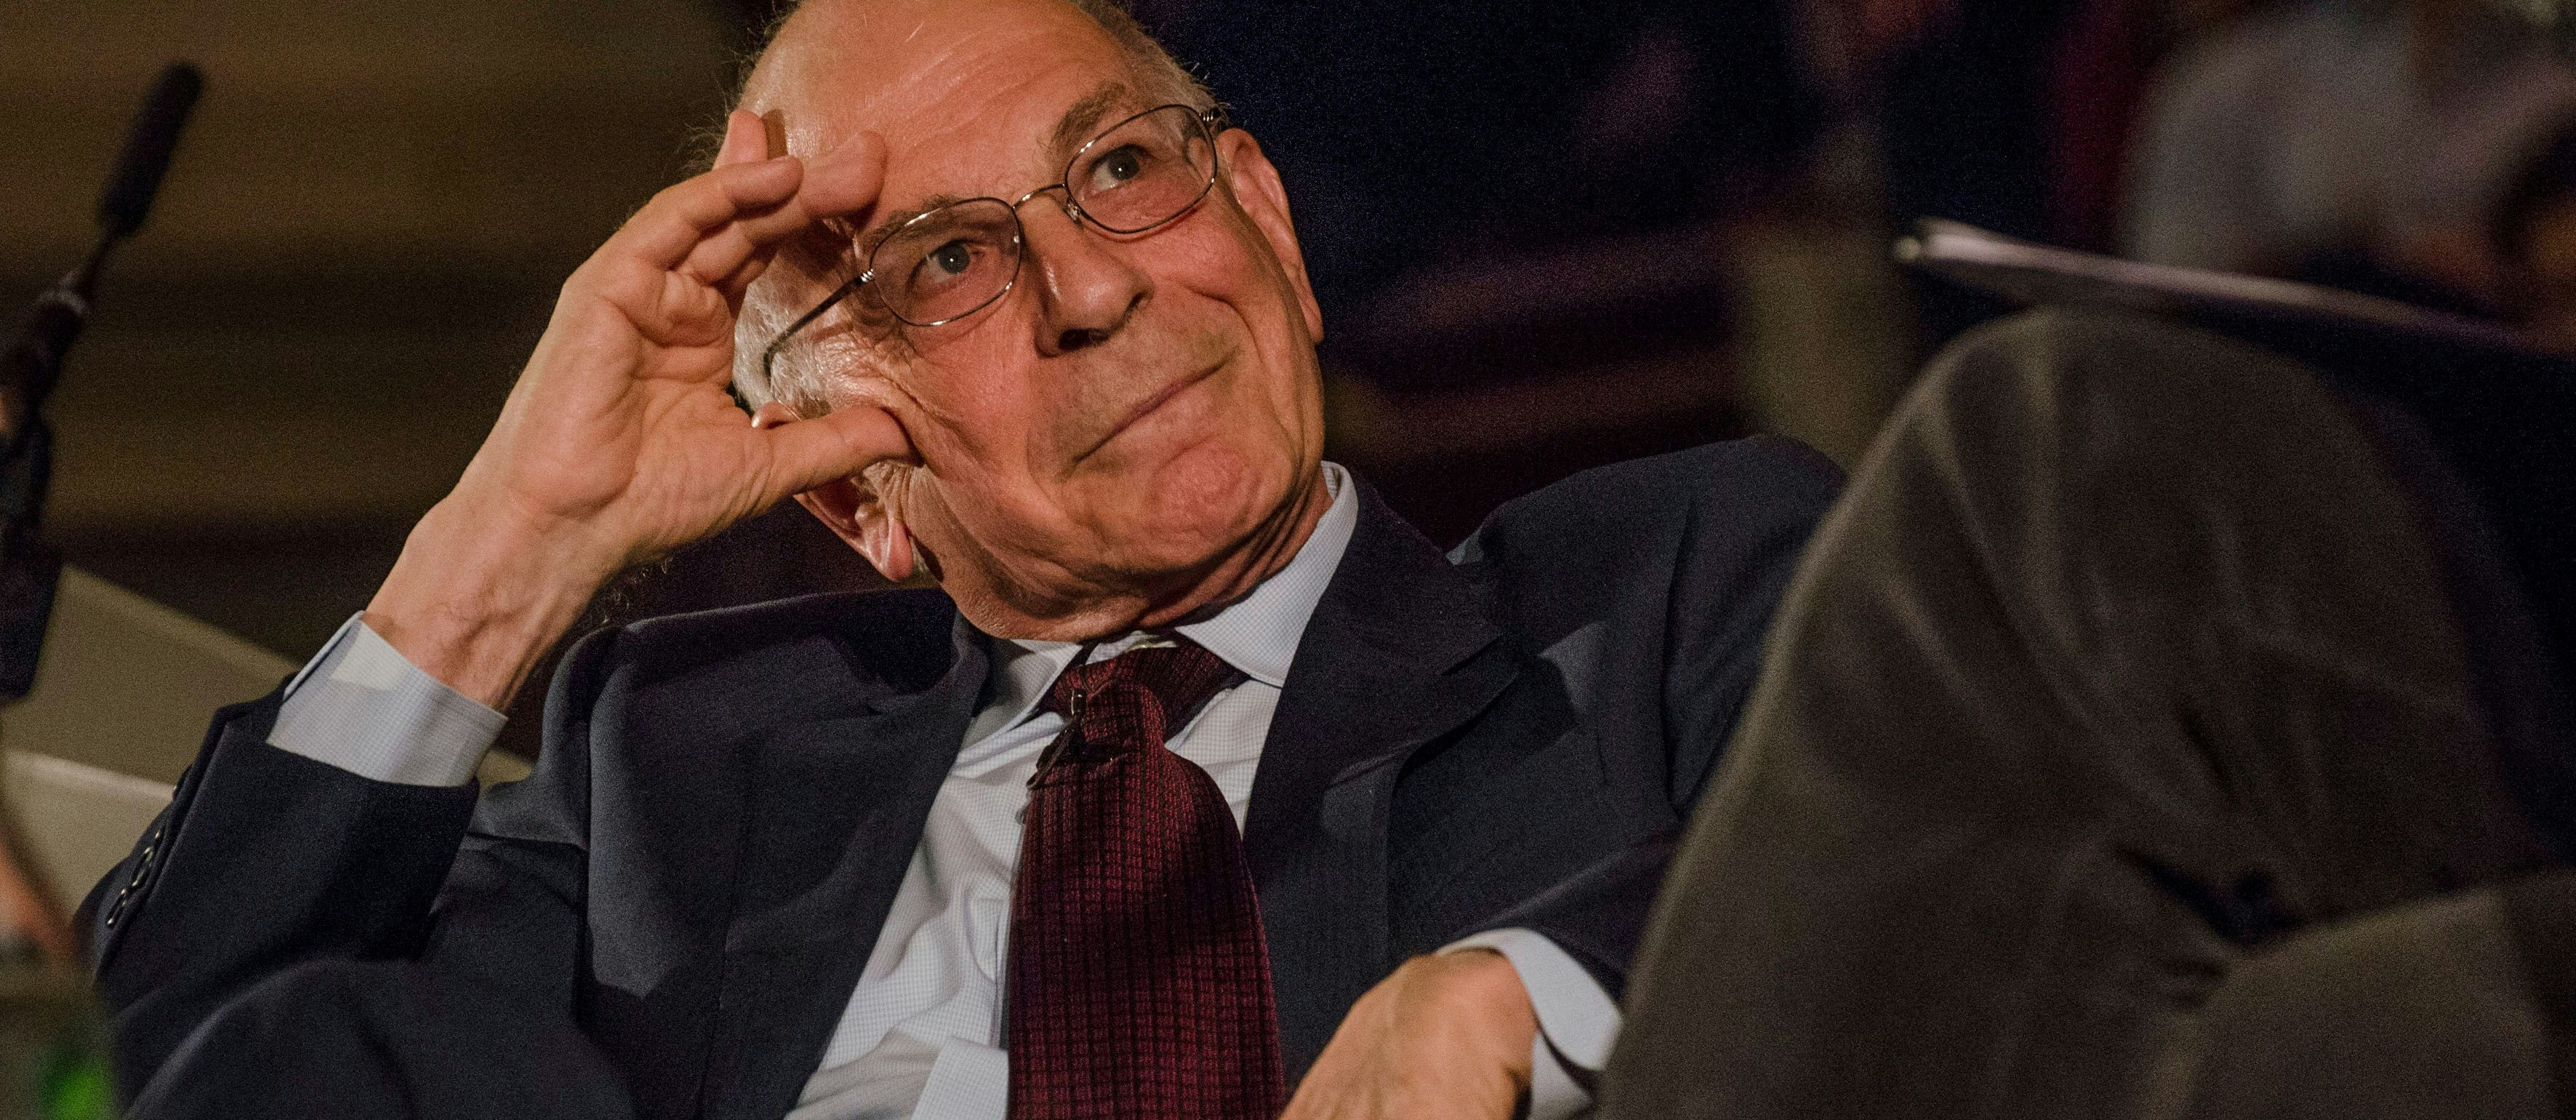 Psychologe und Wirtschafts-Nobelpreisträger Daniel Kahneman bei einer Diskussion in London